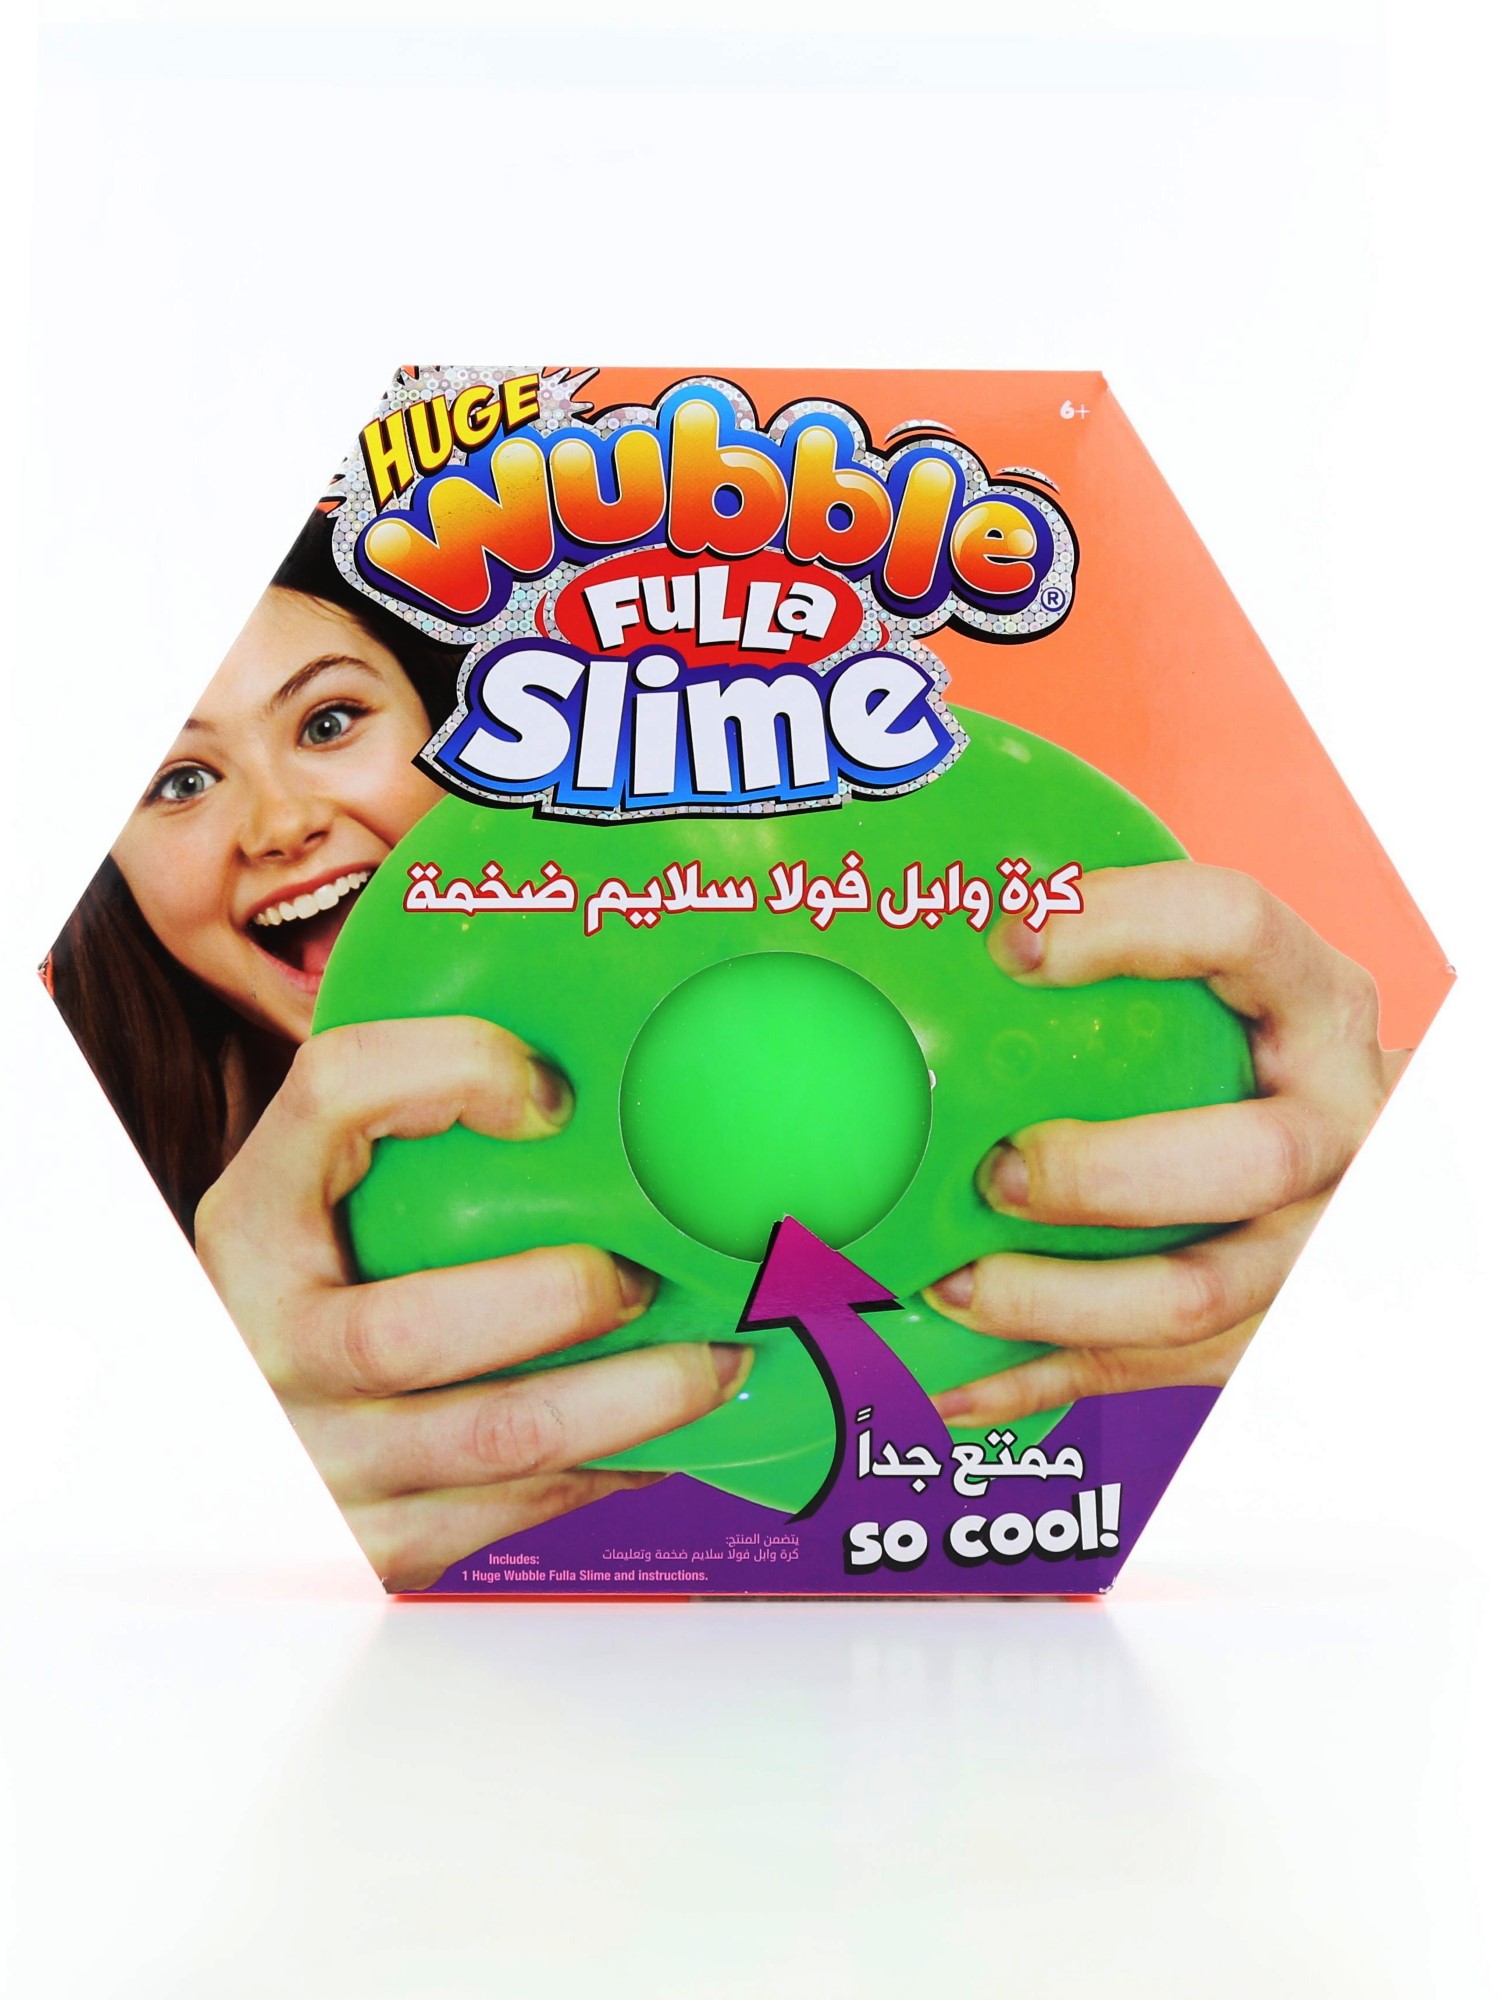 Wubble Bubble Huge Fulla Slime